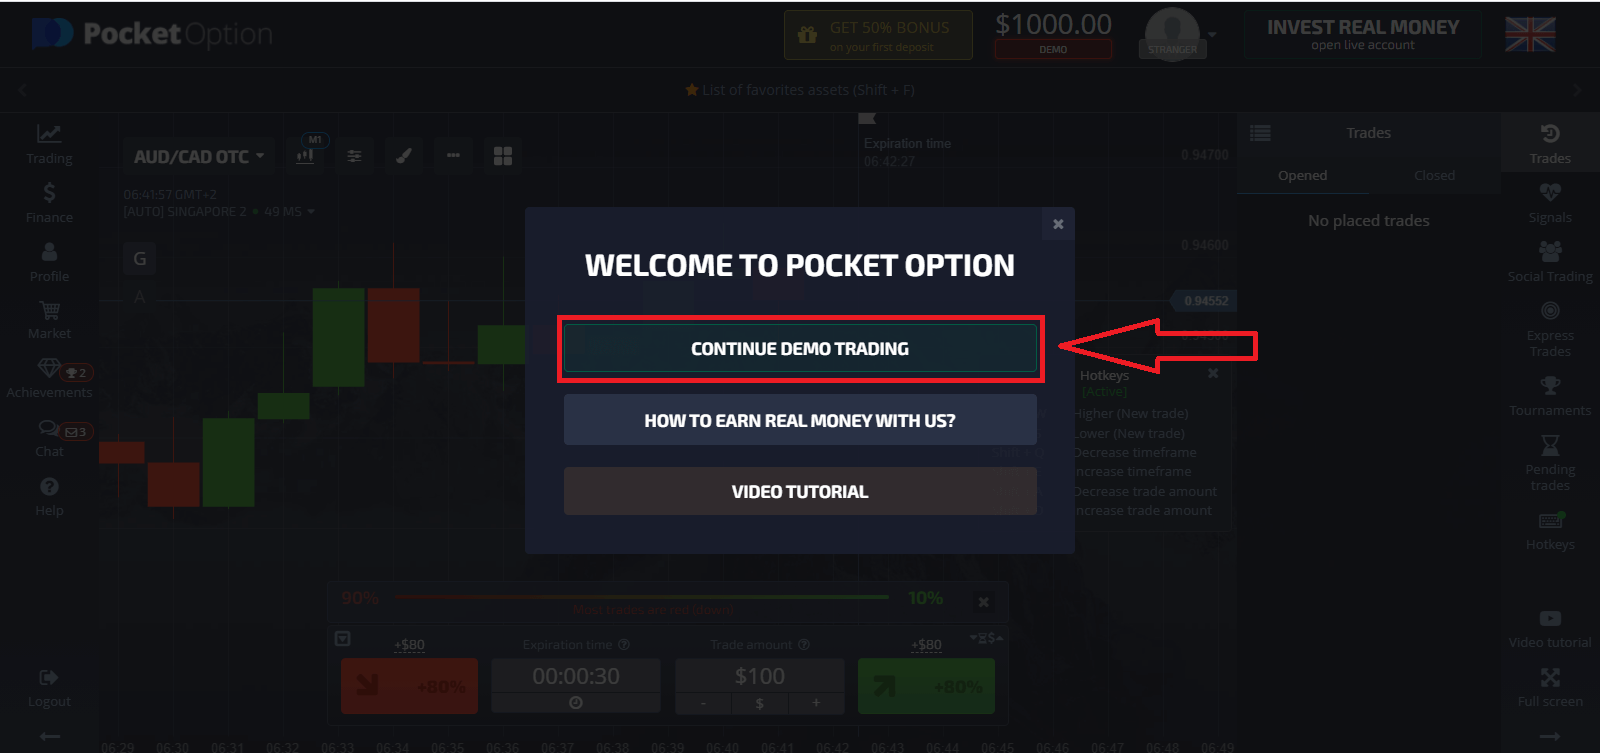 Hvordan åpne konto og sette inn penger på Pocket Option